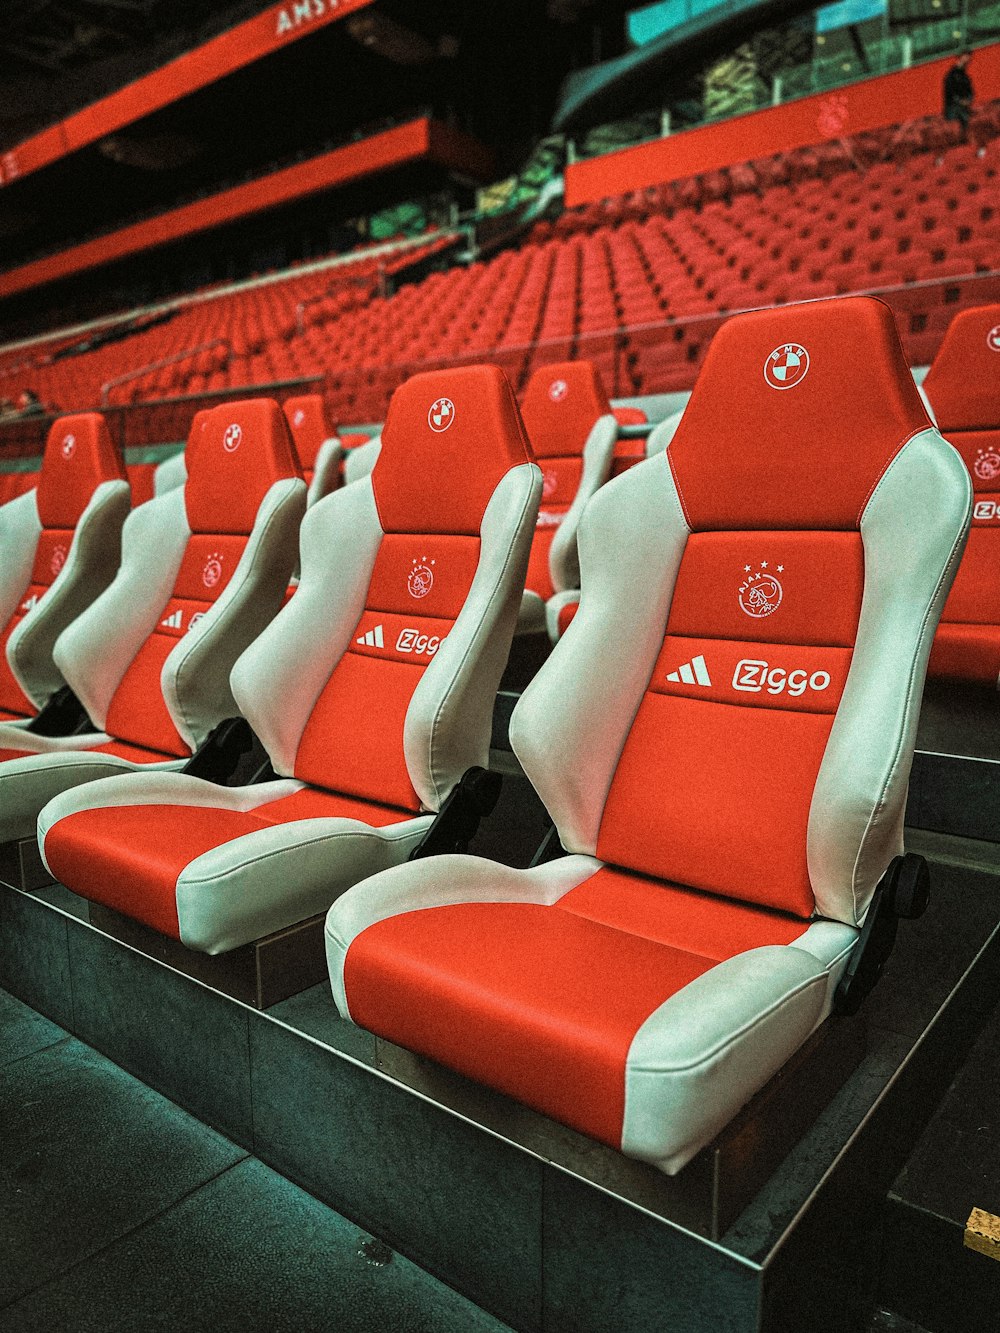 Une rangée de sièges rouges et blancs dans un stade